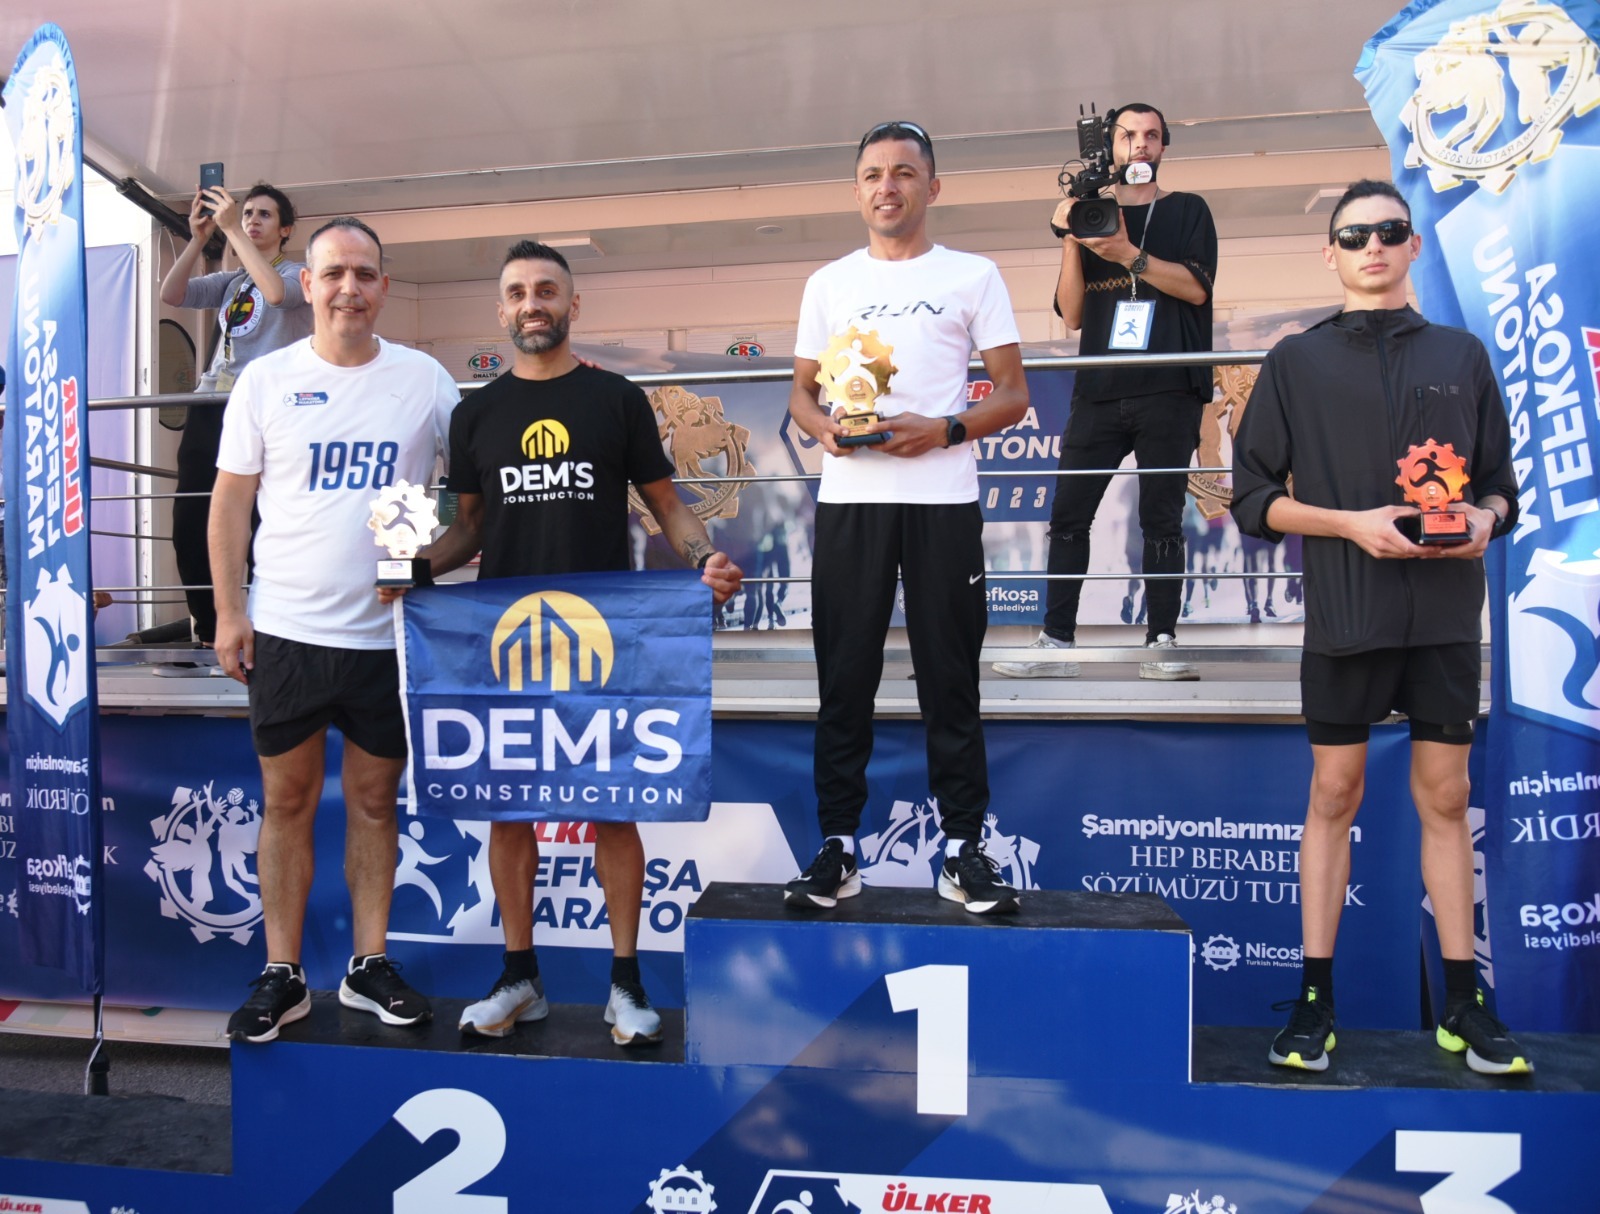 Ülker Lefkoşa Maratonu’nda 10 ve 21 km koşuları sonuçları açıklandı